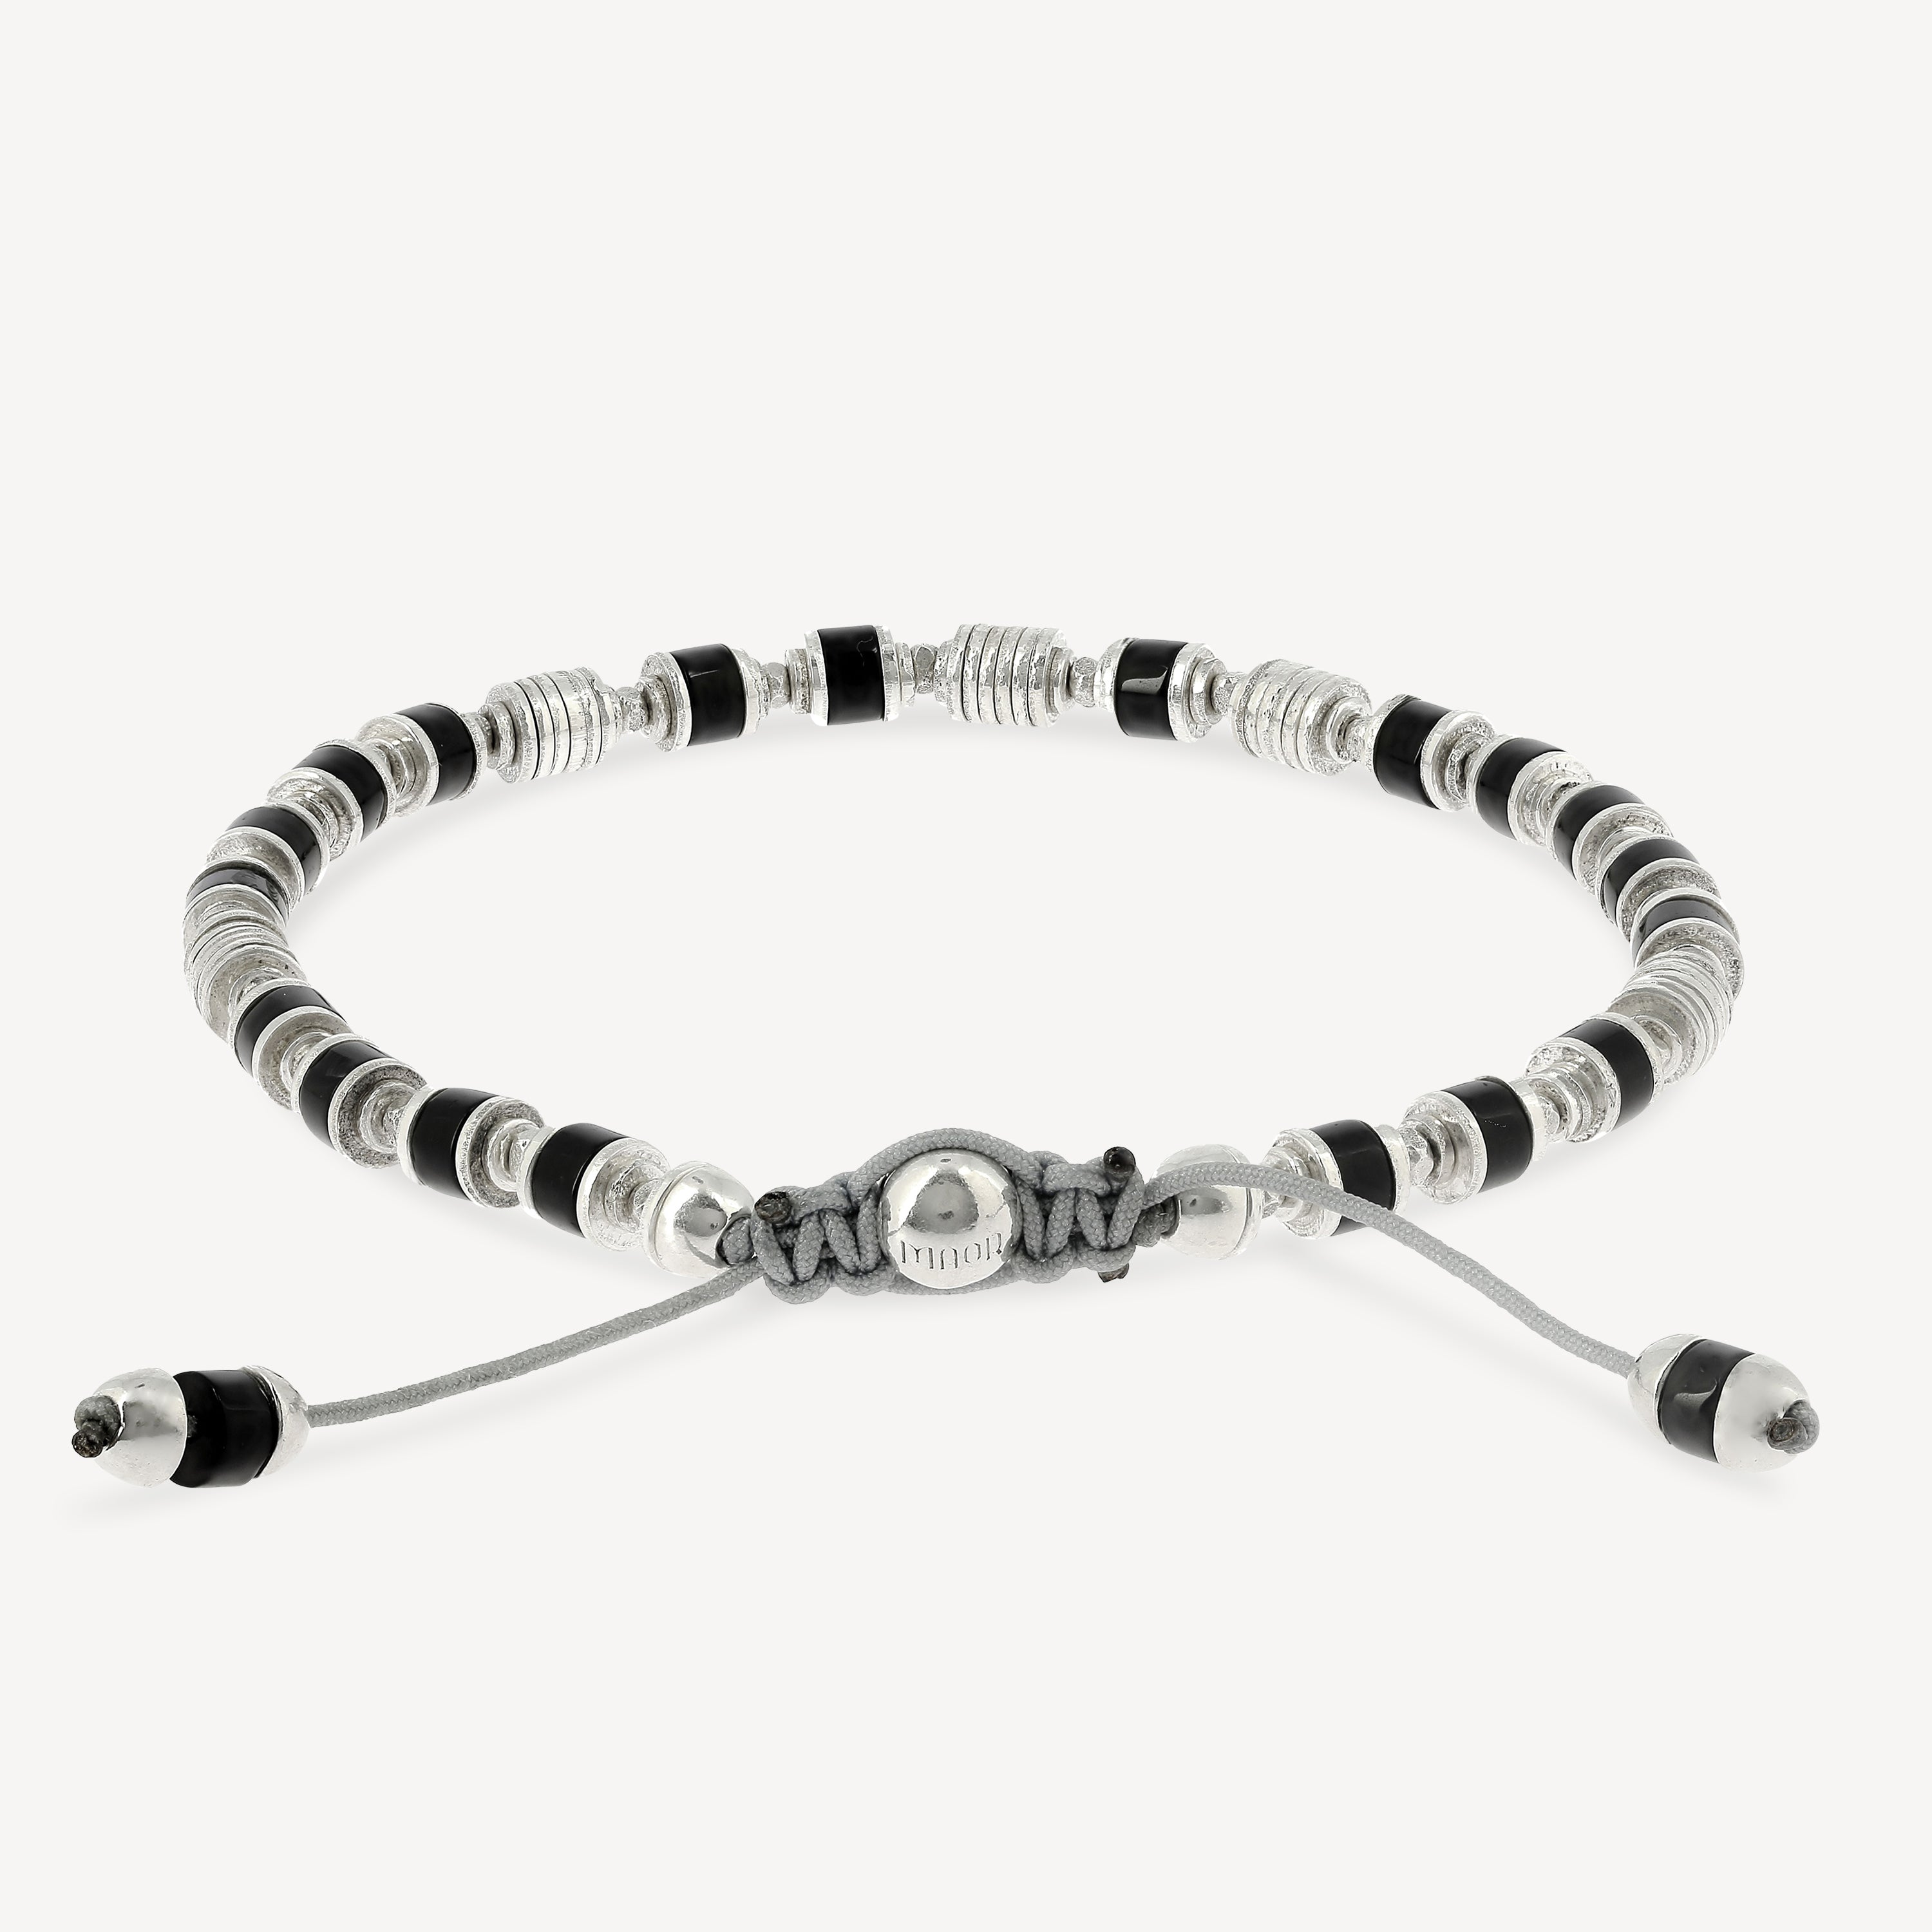 Saguaro-Armband, Silber, schwarzer Achat-Edelstein